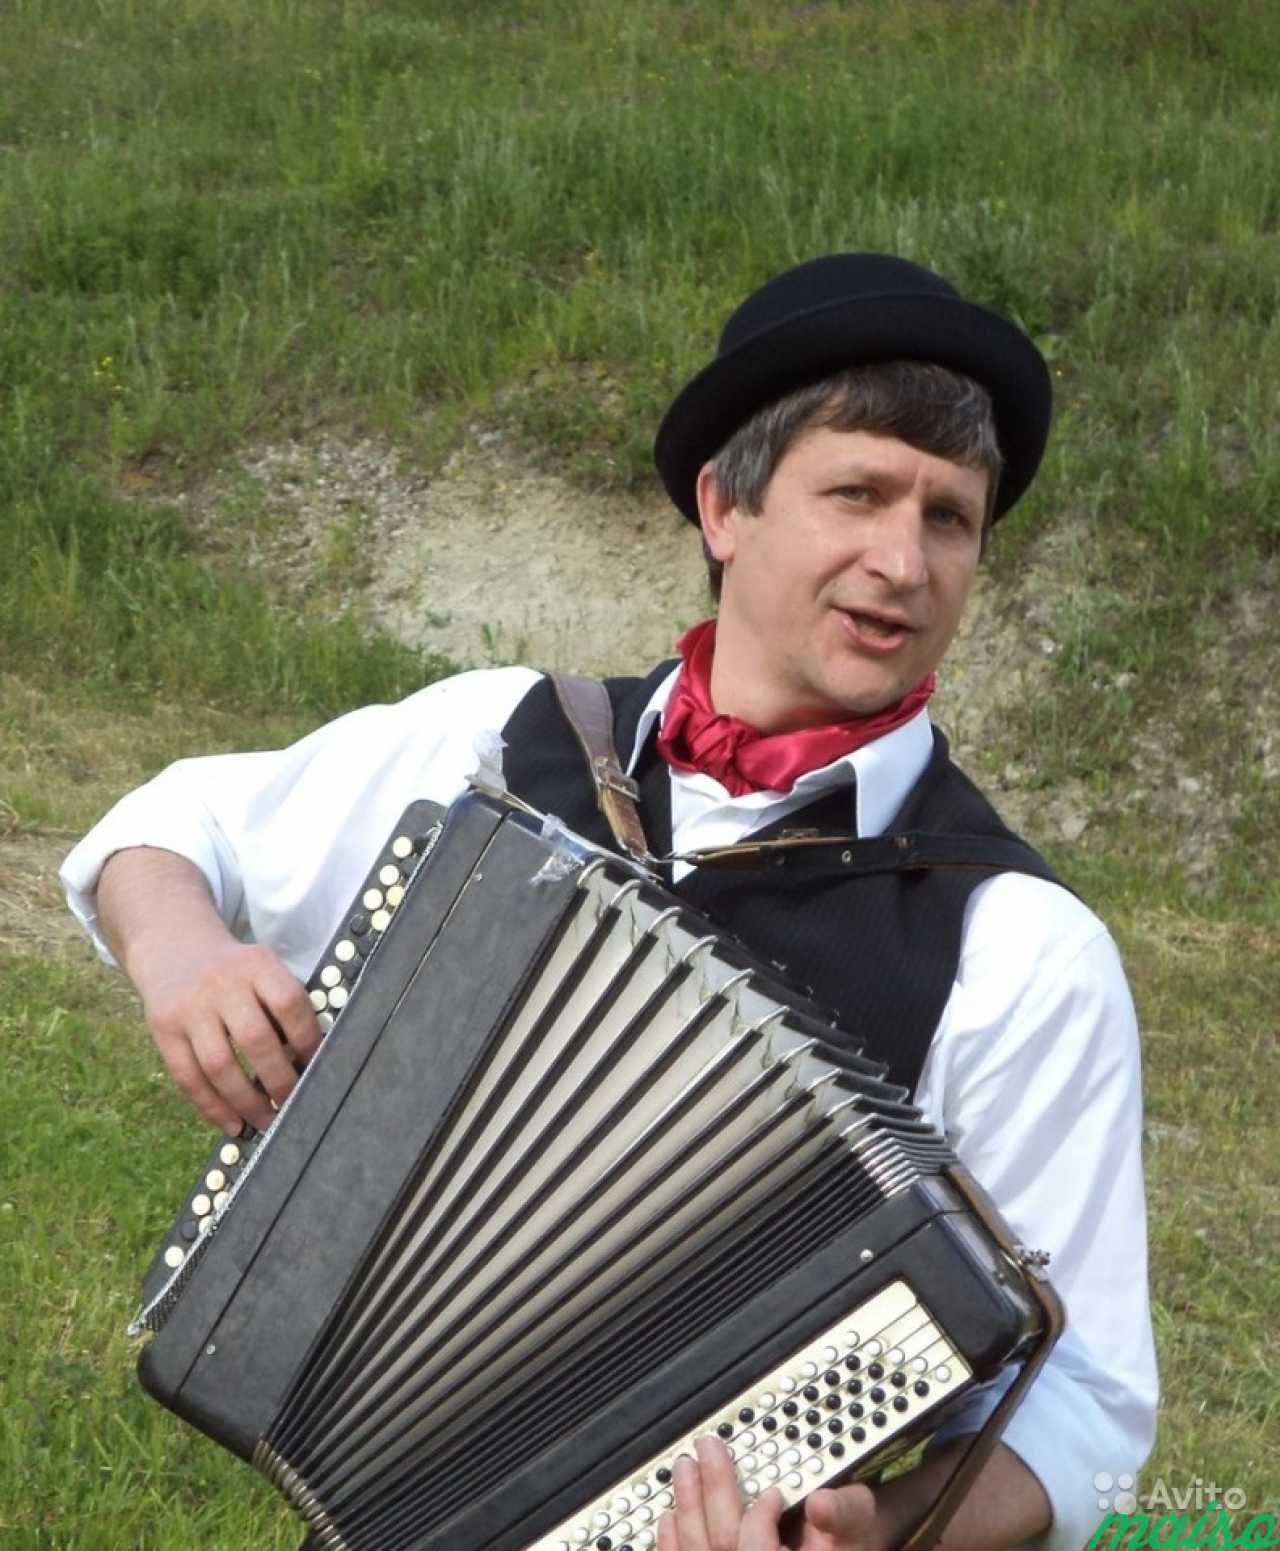 Баянист (гармонист) поющий на юбилей, свадьбу в Санкт-Петербурге. Фото 2